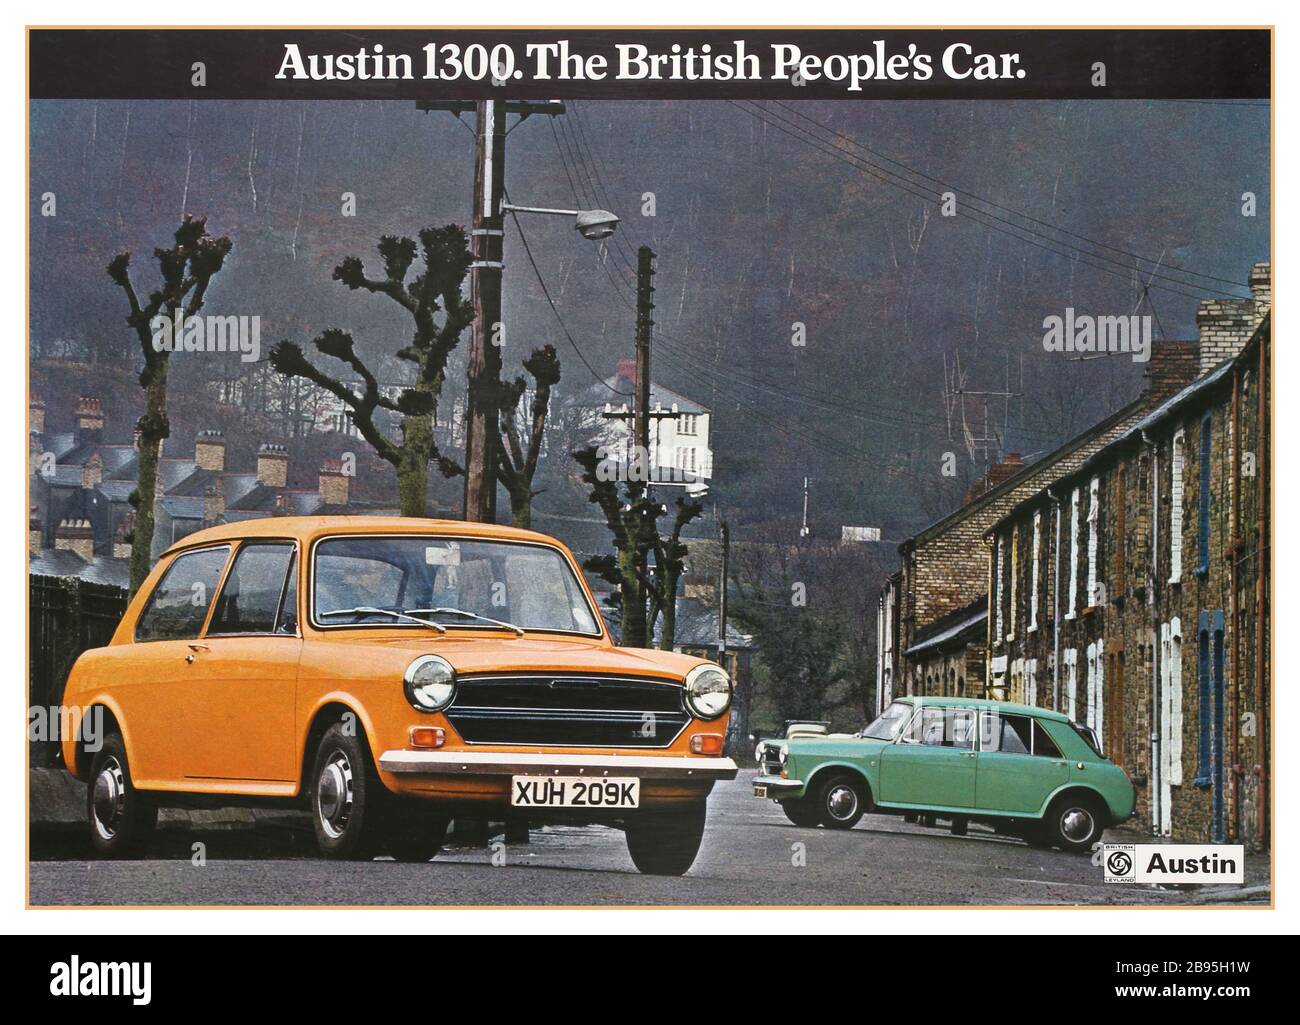 Vintage 1970s British Motorcar Werbeplakat Austin 1300. Das britische Volksauto. Das Poster zeigt ein Farbbild von zwei Austin 1300s (ein Modell mit drei Türen, gelb und ein Modell mit fünf Türen, grün auf der rechten Seite), die in einer Straße geparkt sind. Der von British Leyland hergestellte Austin 1300 war Teil einer Reihe kleiner Familienwagen, die von der British Motor Corporation (BMC) später British Leyland unter dem Namen BMC gebaut wurden Stockfoto